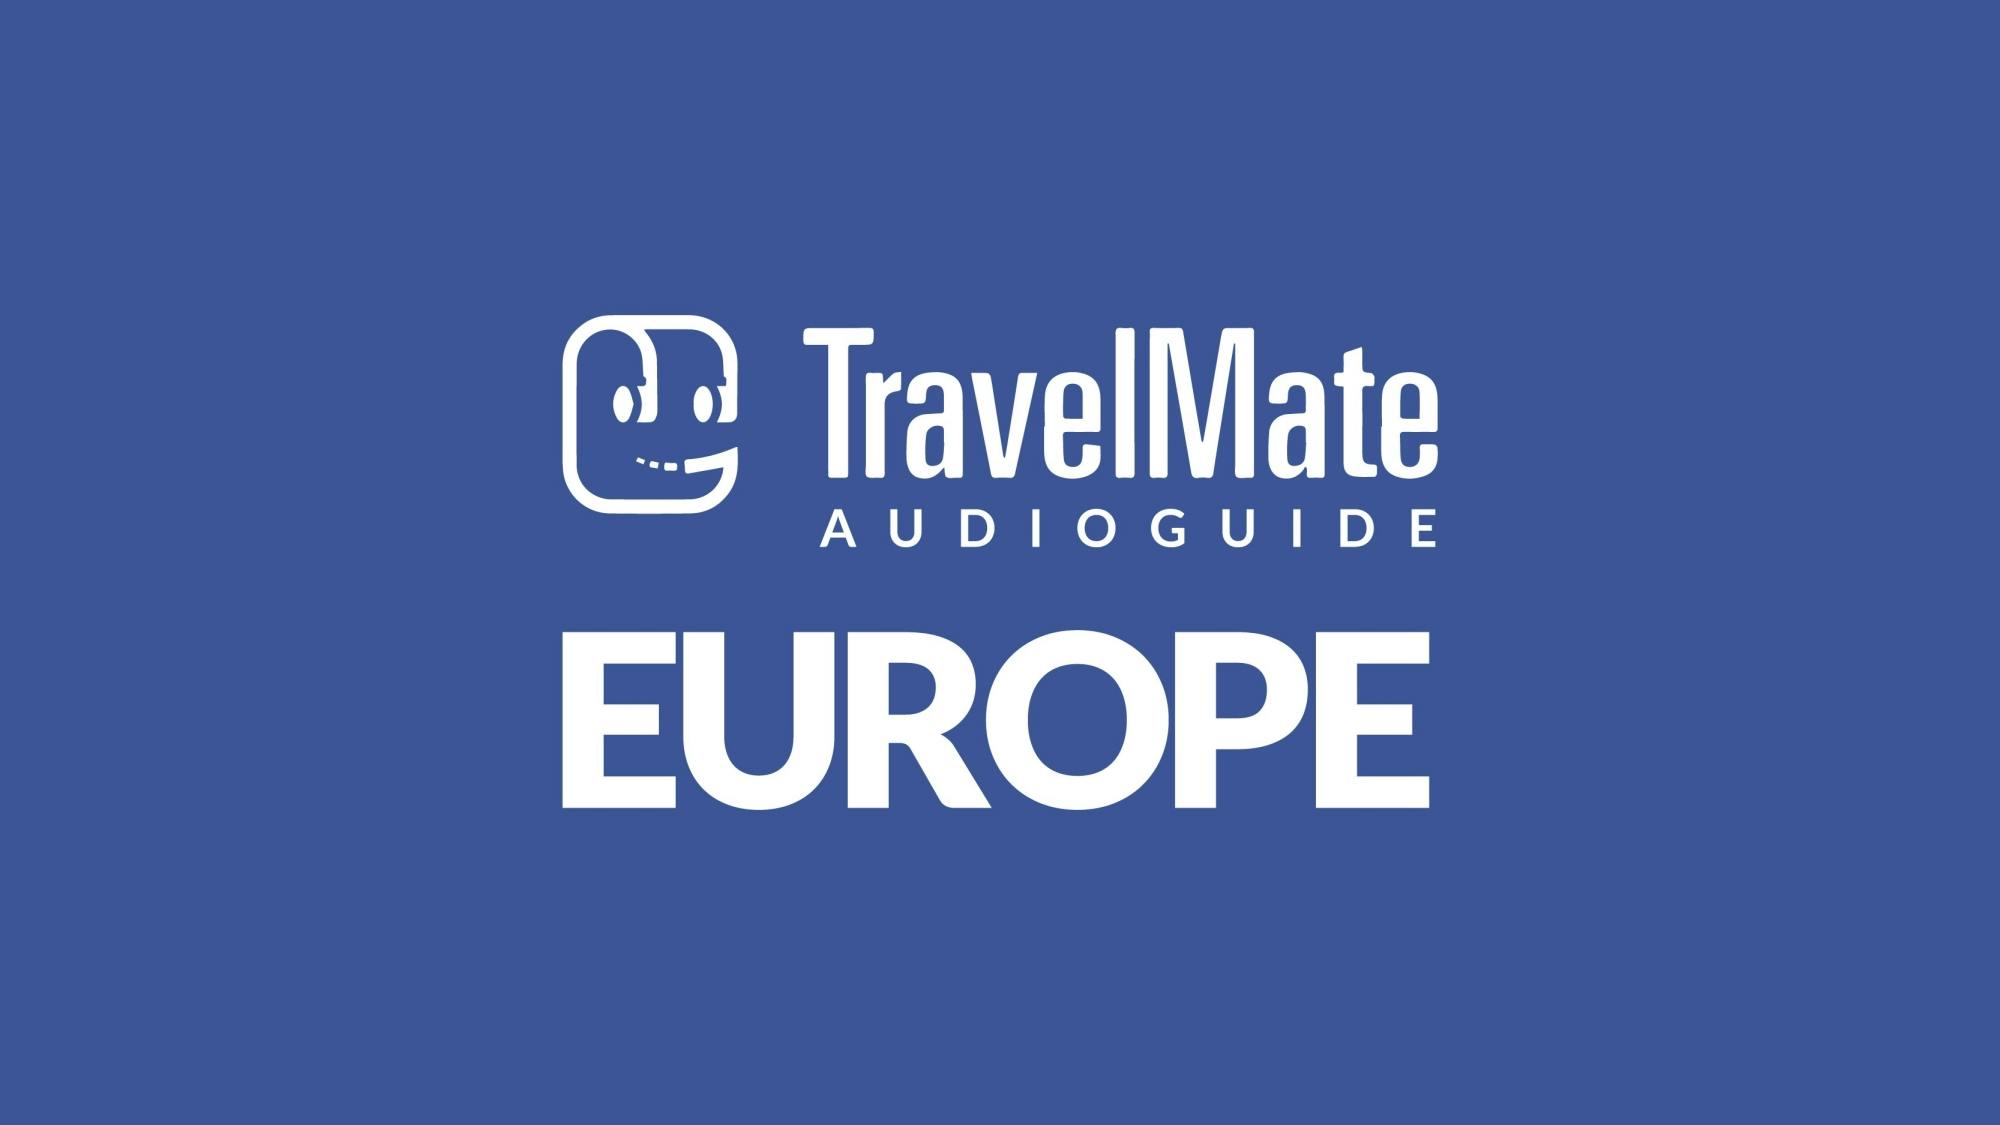 Audioprzewodnik po Europie z aplikacją TravelMate